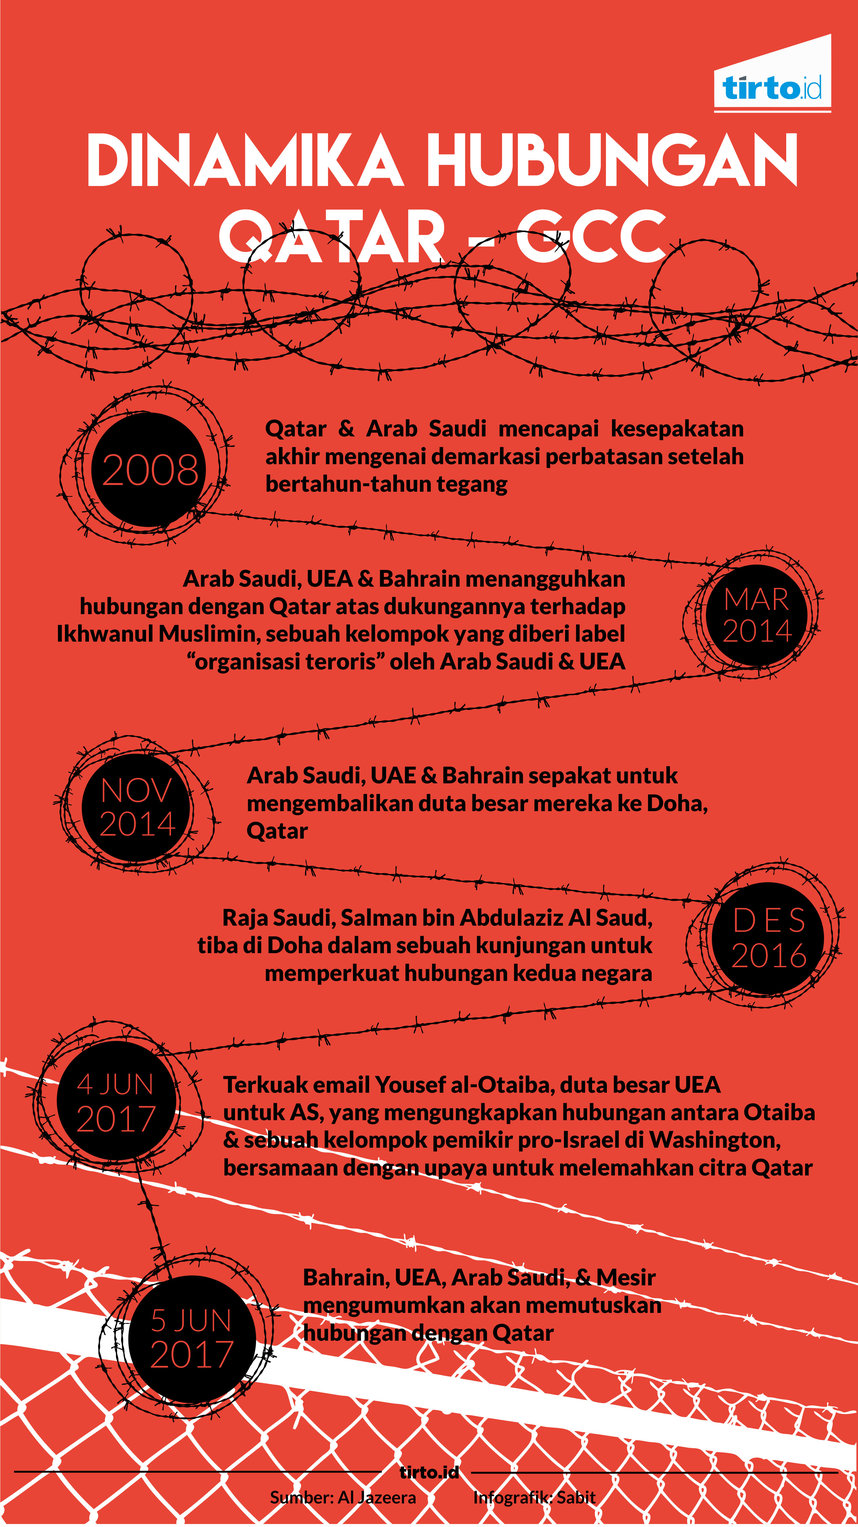 Infografik dinamika Hubungan Qatar GCC